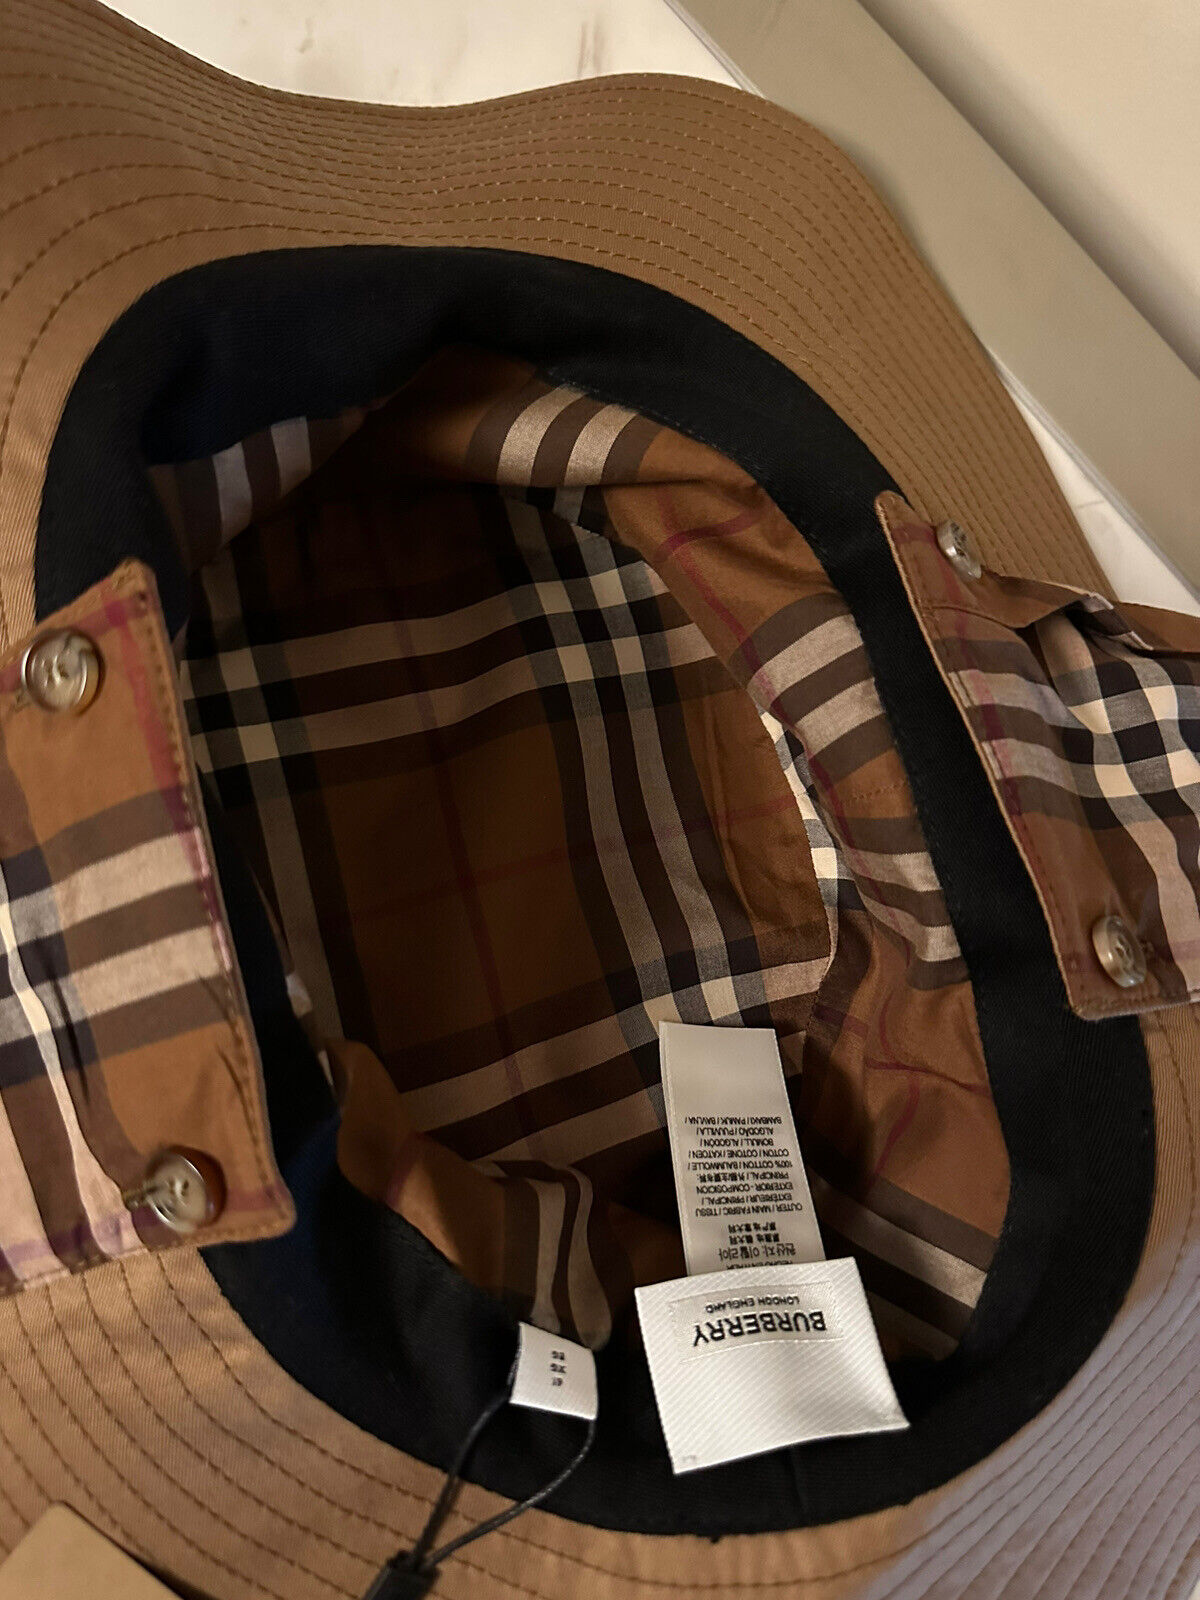 Neu mit Etikett: 680 $ Burberry Bucket Hat mit Ohrenschutz DUSTY CARAMEL Größe XL Italien